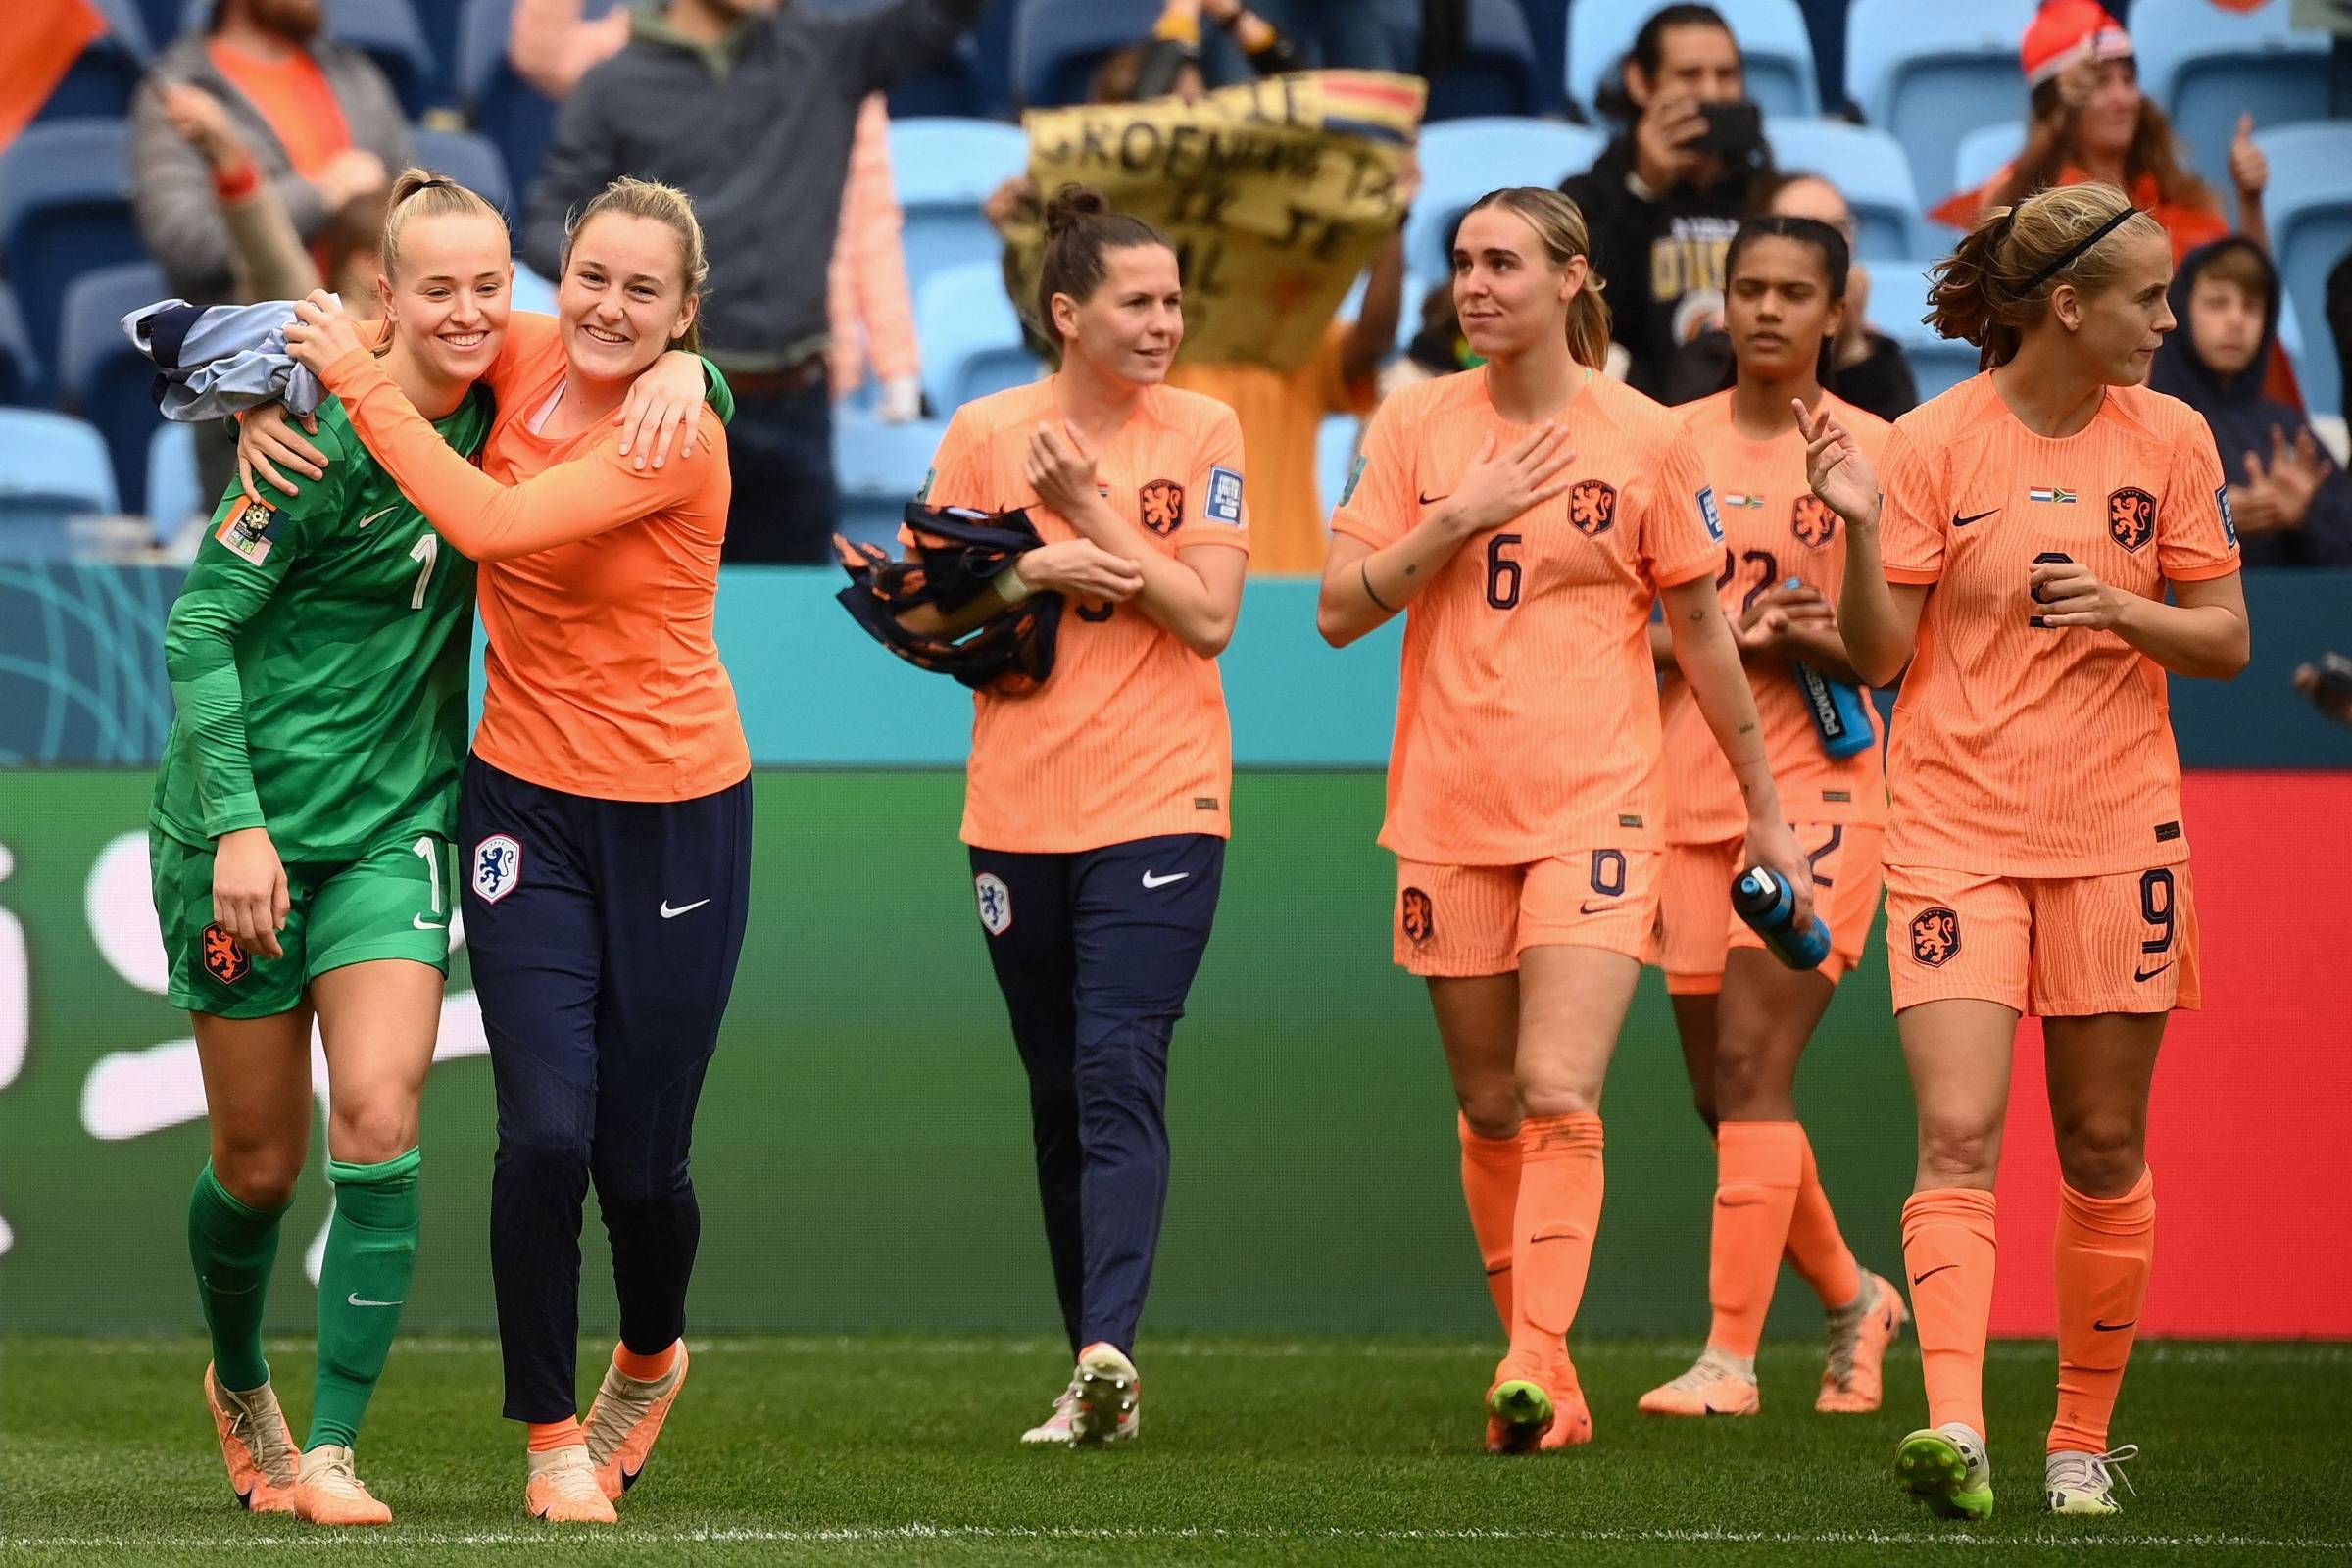 Holanda e Espanha disputam lugar no clube dos campeões - BBC News